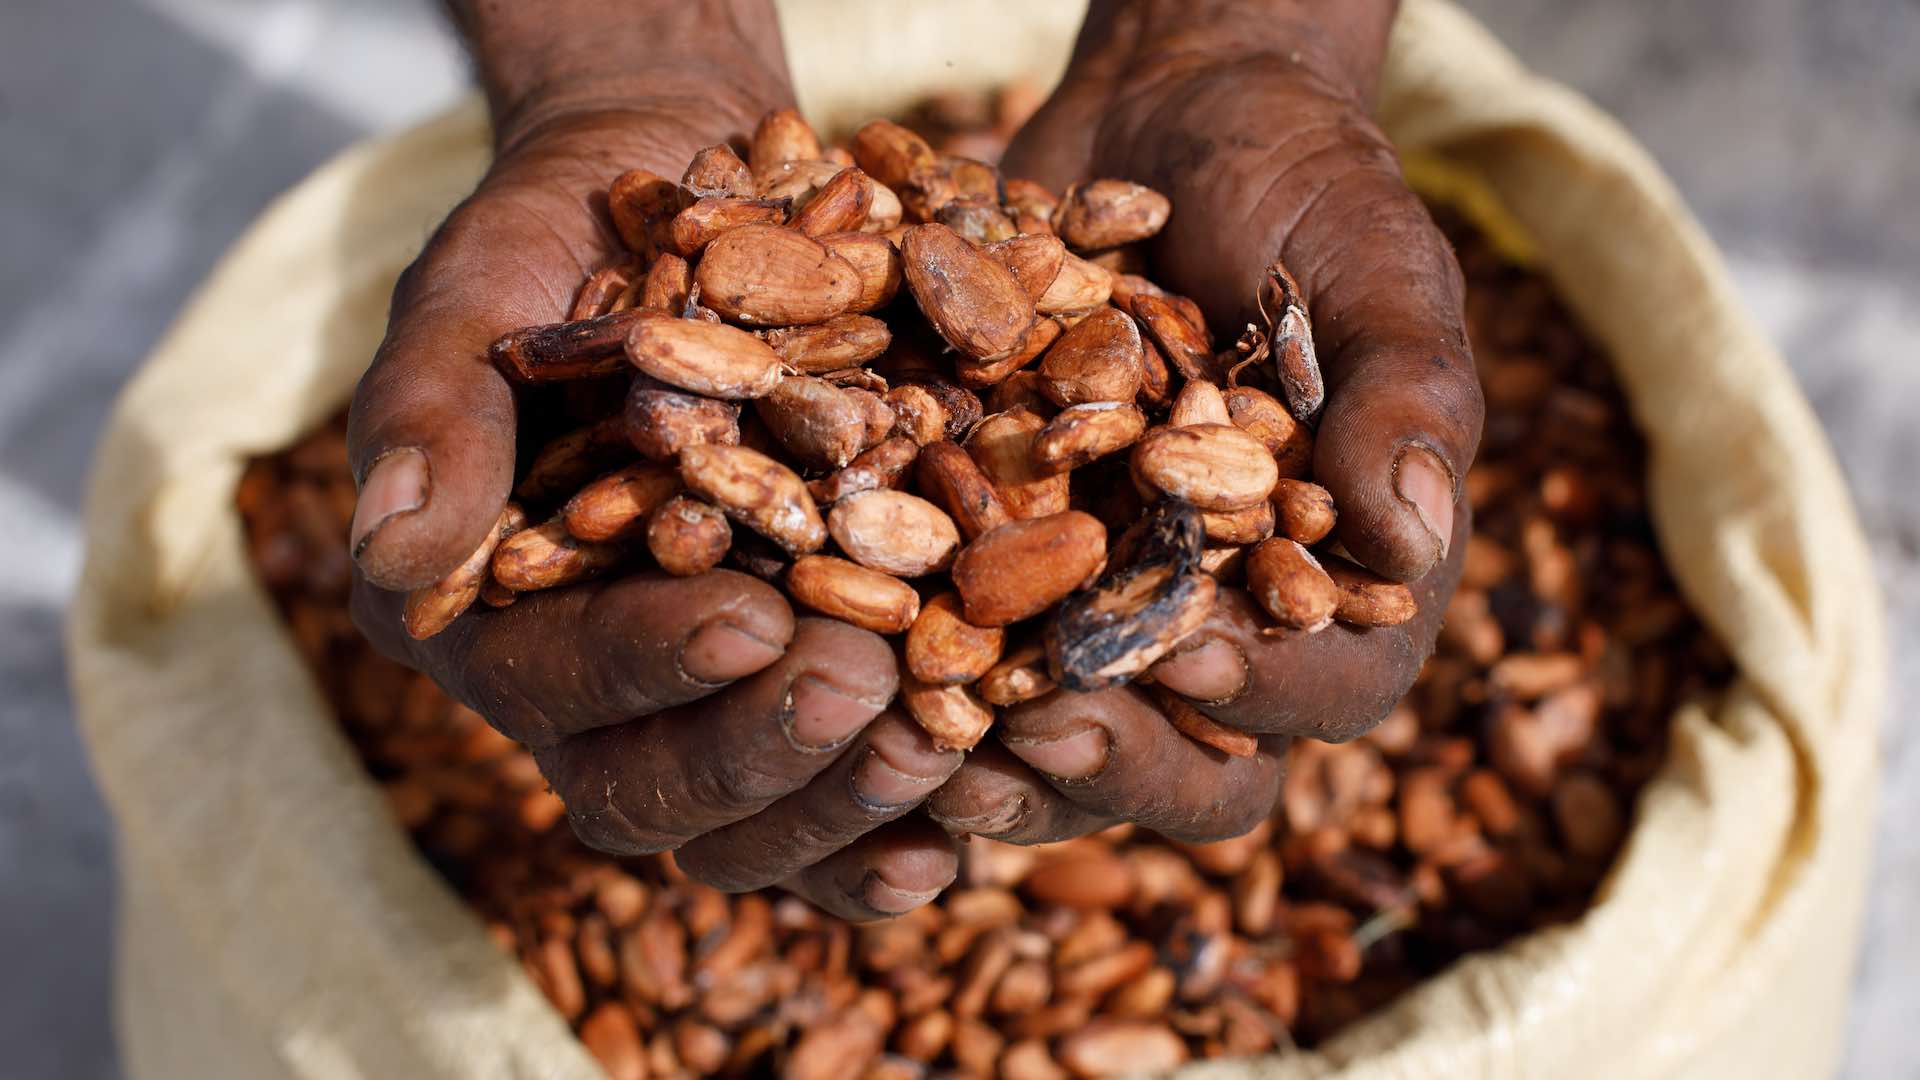 पश्चिम अफ़्रीका में खराब मौसम के कारण फसल की पैदावार प्रभावित होने से कोको की कीमतों में उछाल आया है